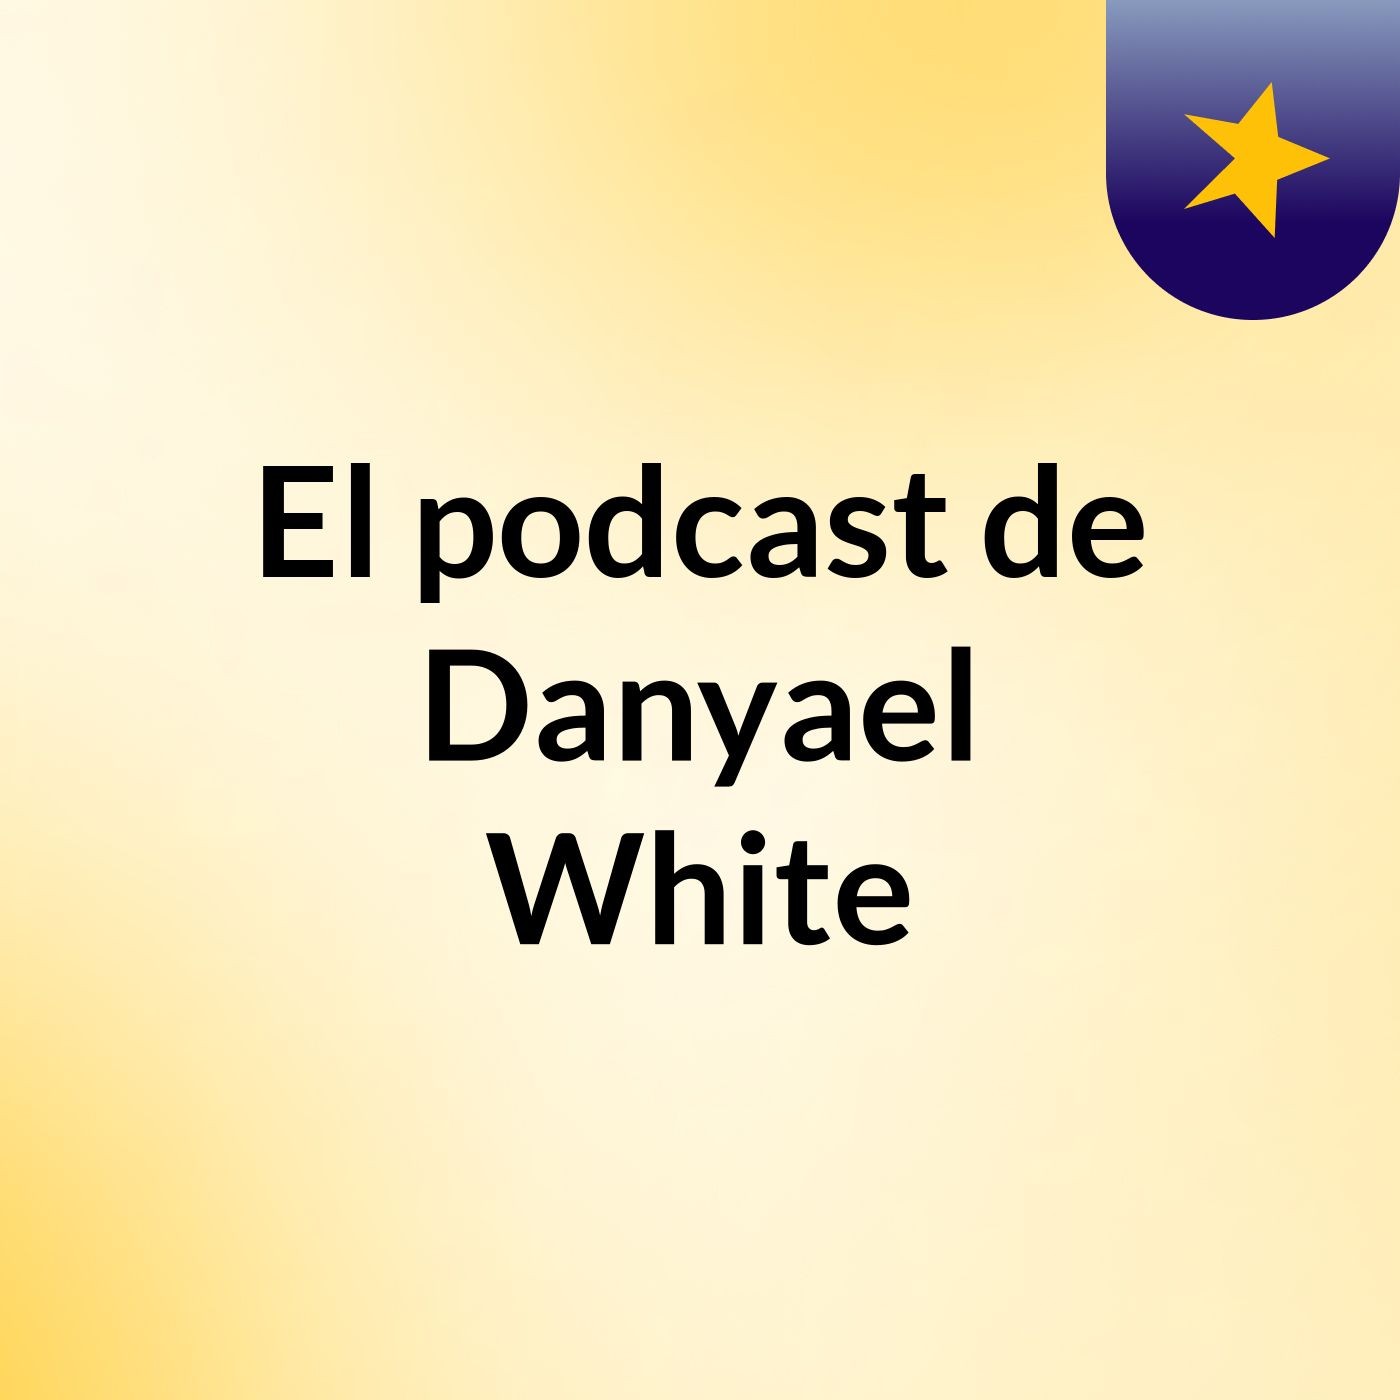 El podcast de Danyael White